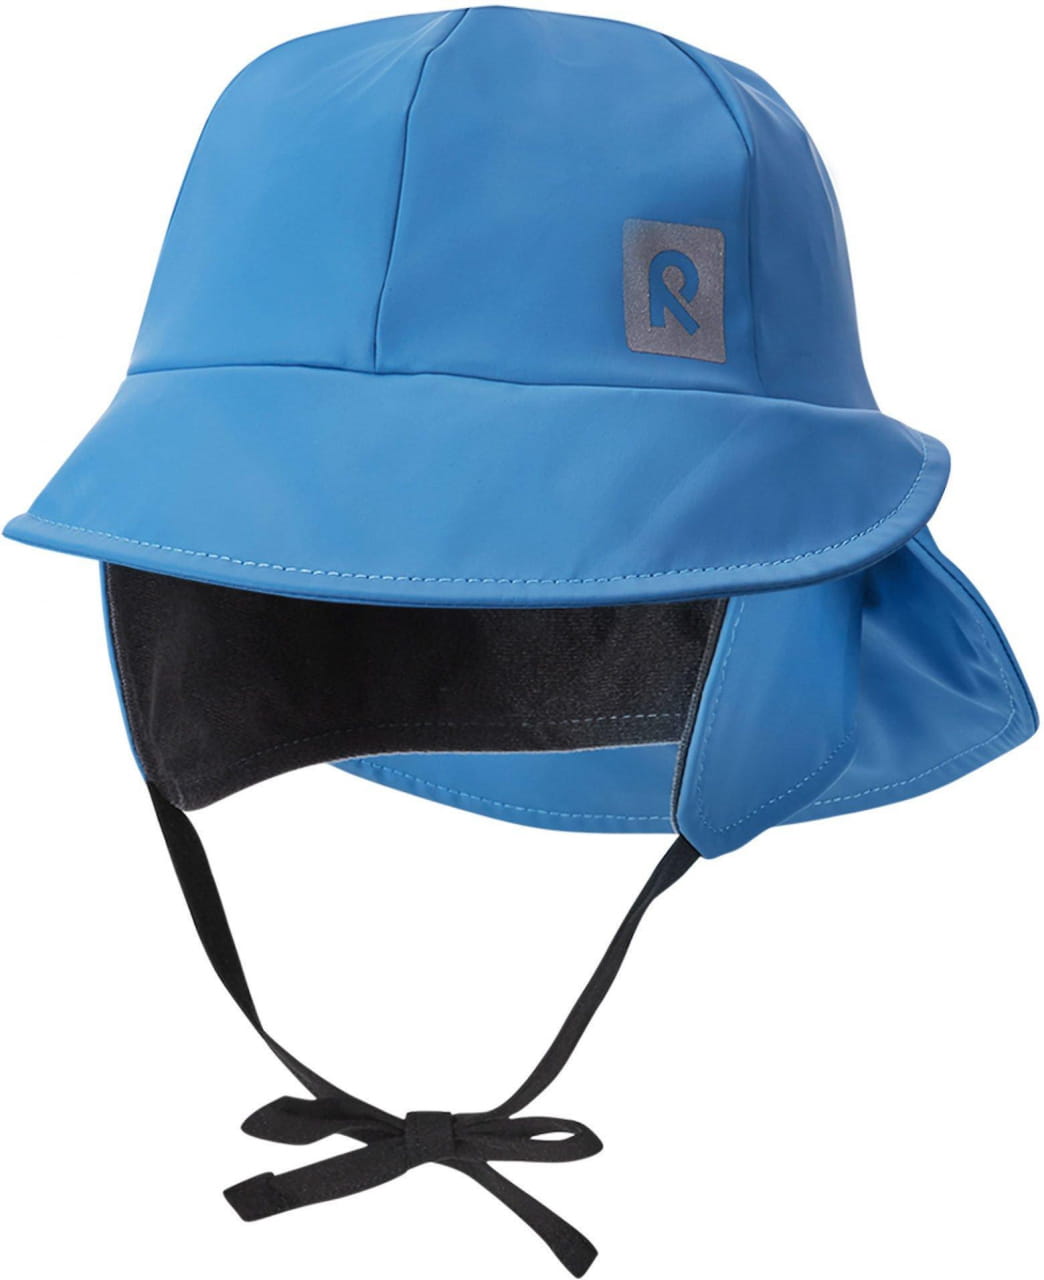 Otroški dežni klobuk  Reima Rainy